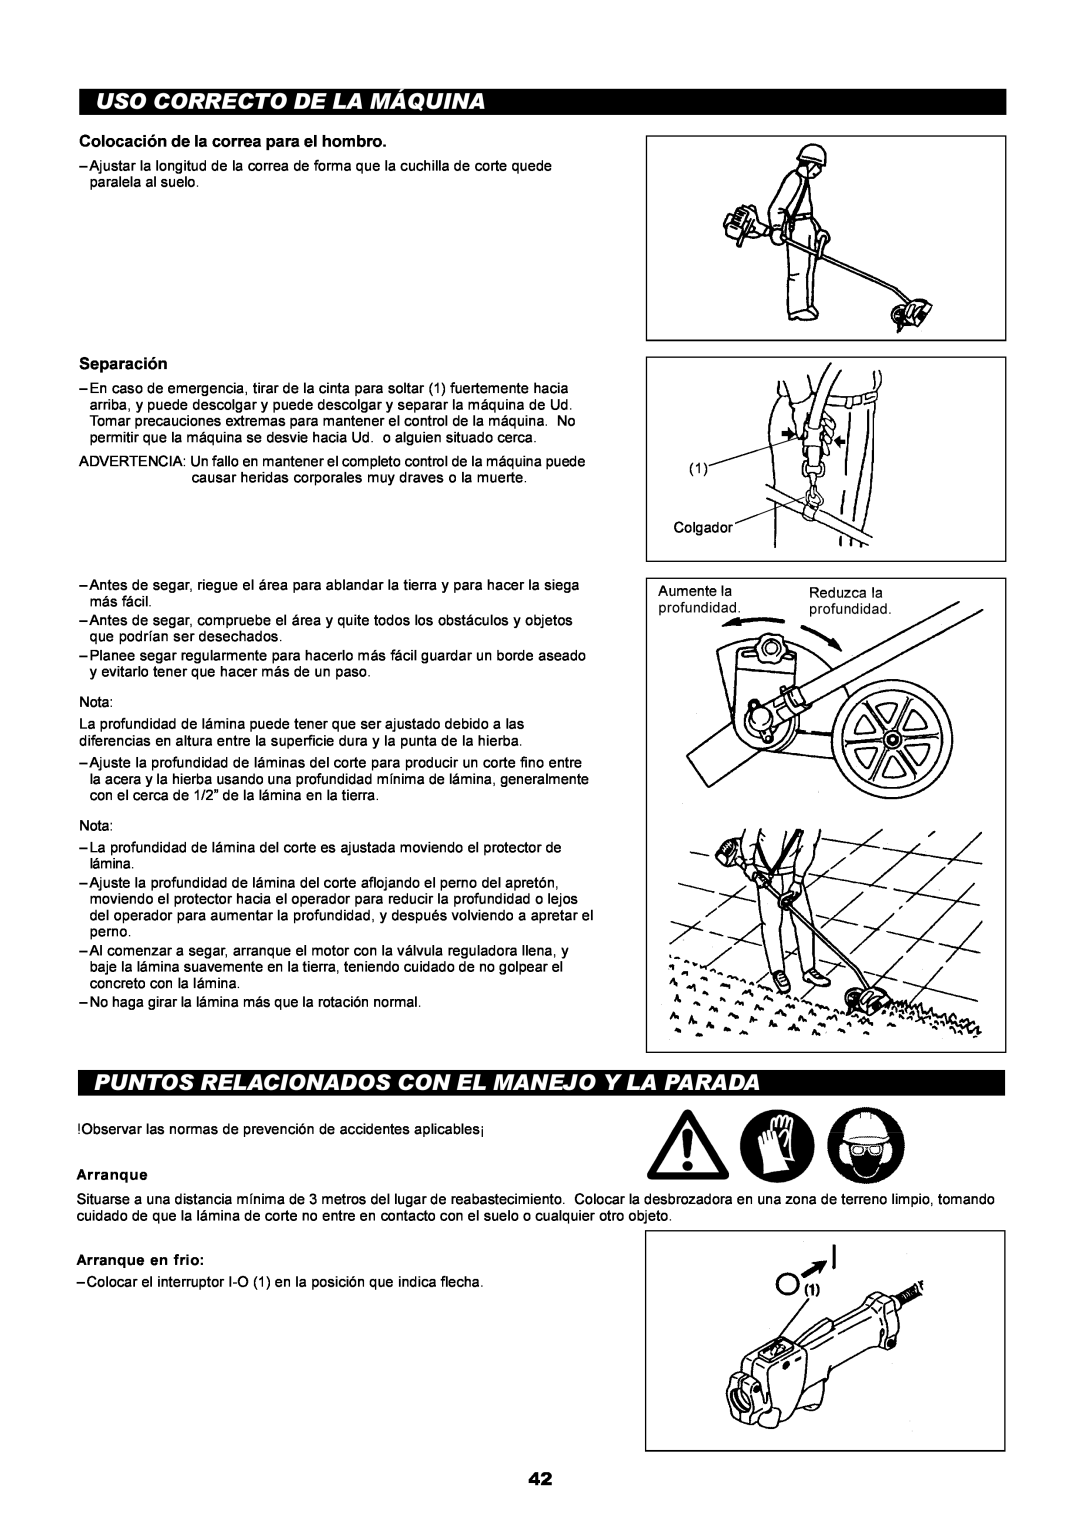 Dolmar PE-251 instruction manual Uso Correcto De La Máquina, Puntos Relacionados Con El Manejo Y La Parada, Separación 